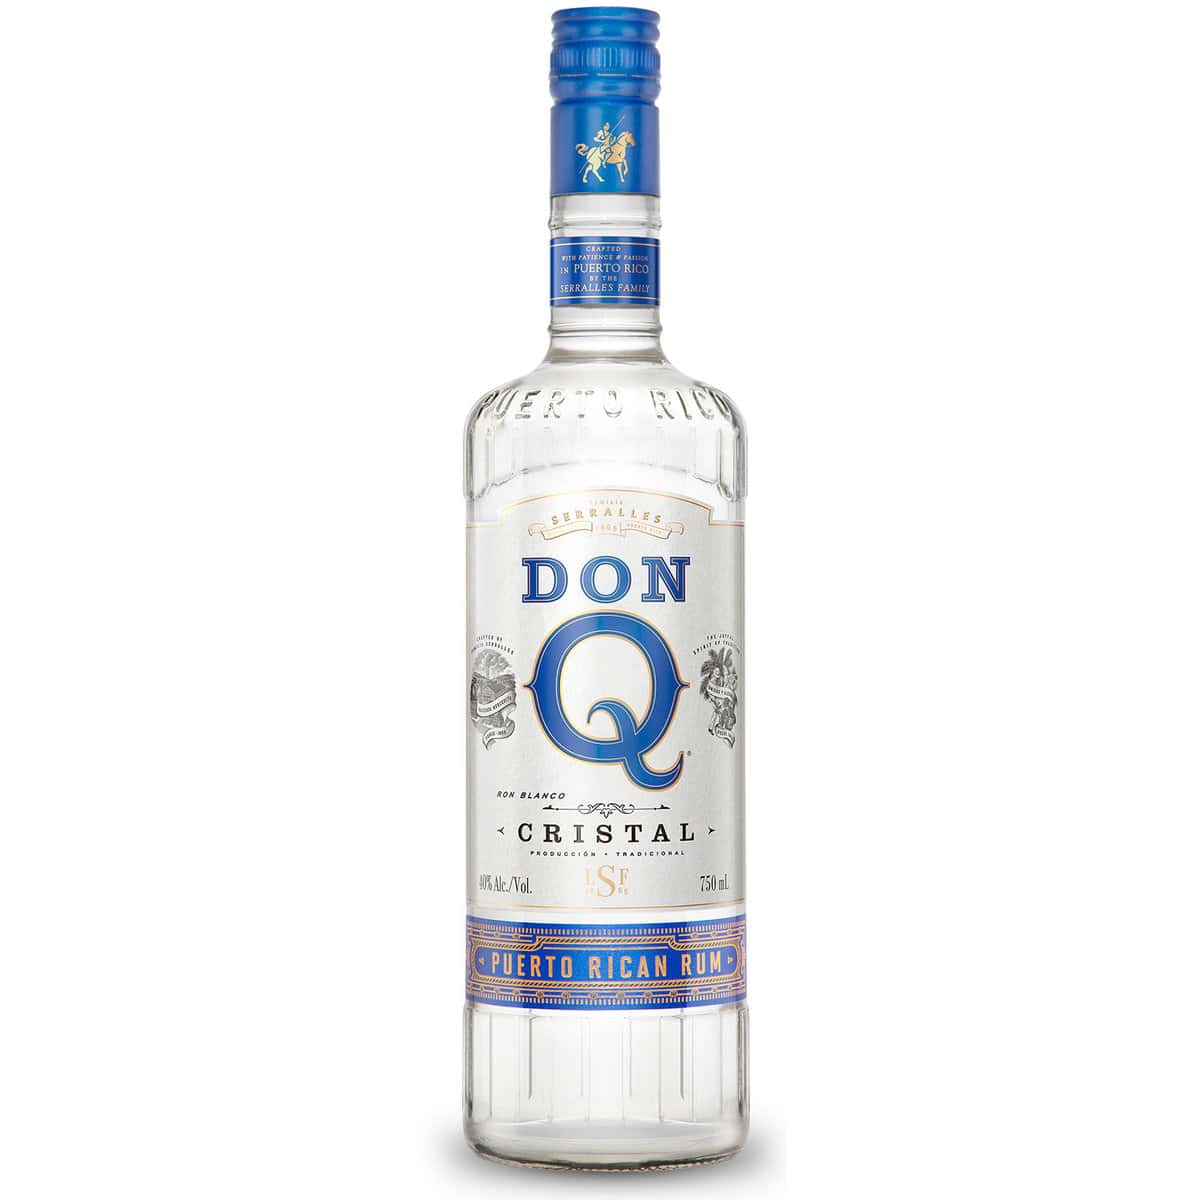 Don Q Cristal white rum